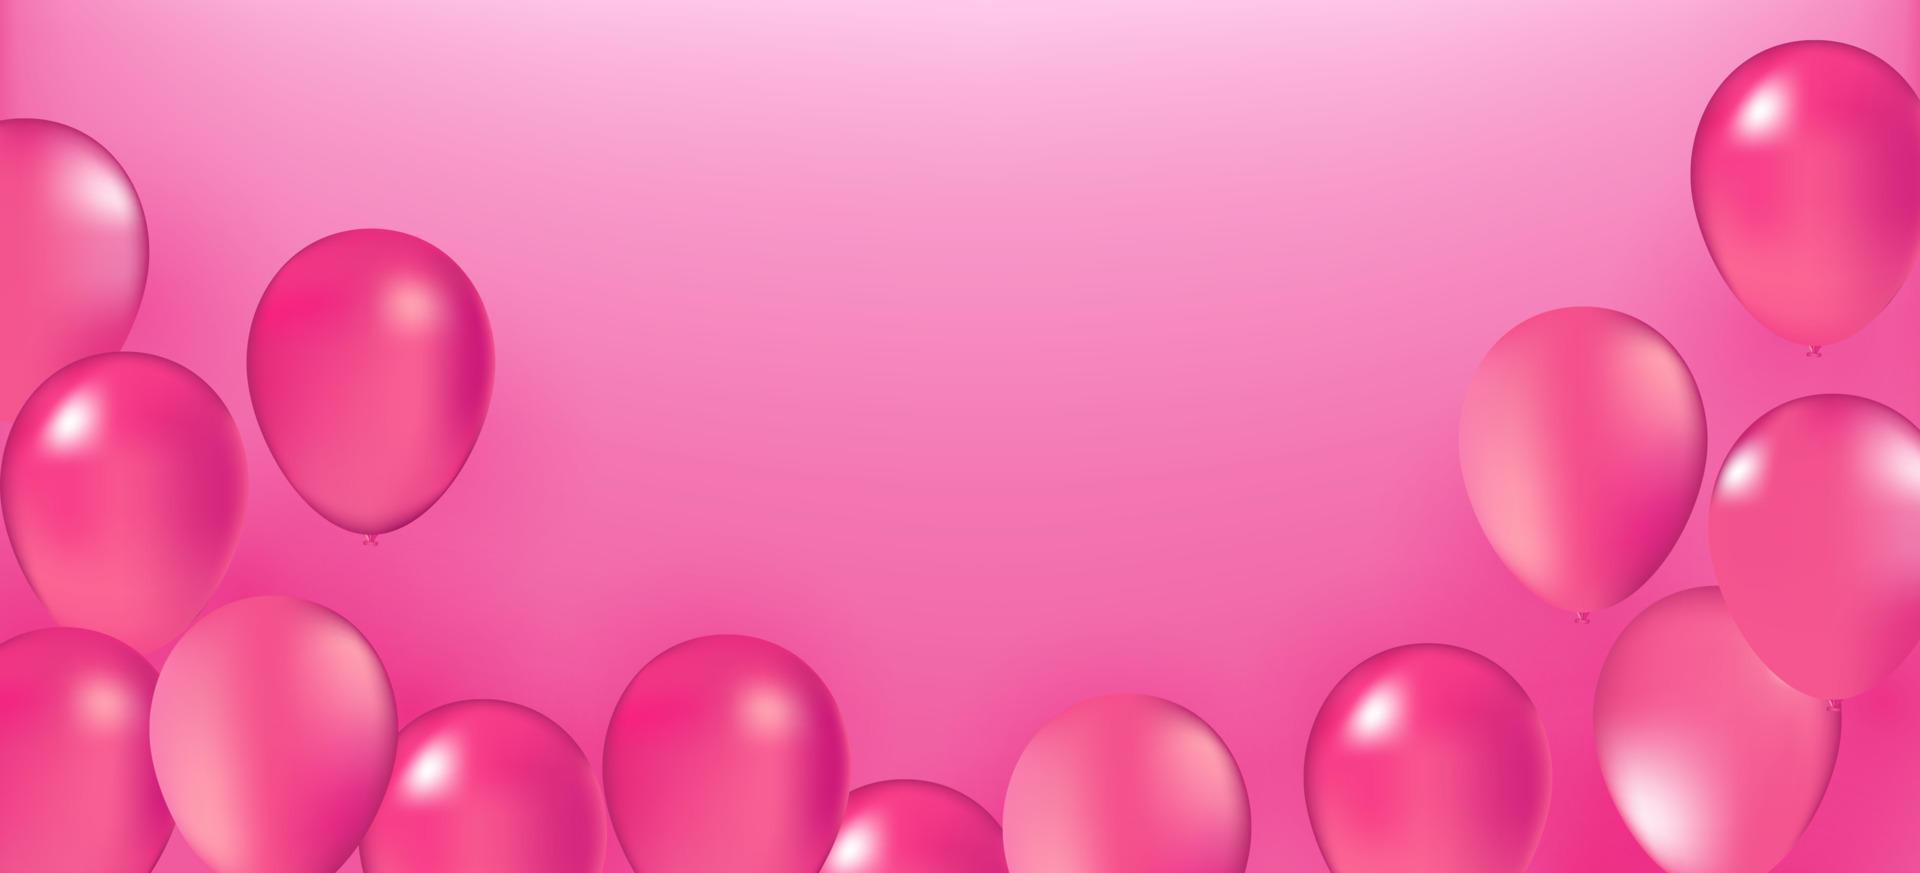 realistische vektorpartyballons rosa romantische liebe eleganz valentinstag 14. februar dekoration geburtstagsfeier eleganz grußkarte gestaltungselement isoliert auf rosa hintergrund. vektor